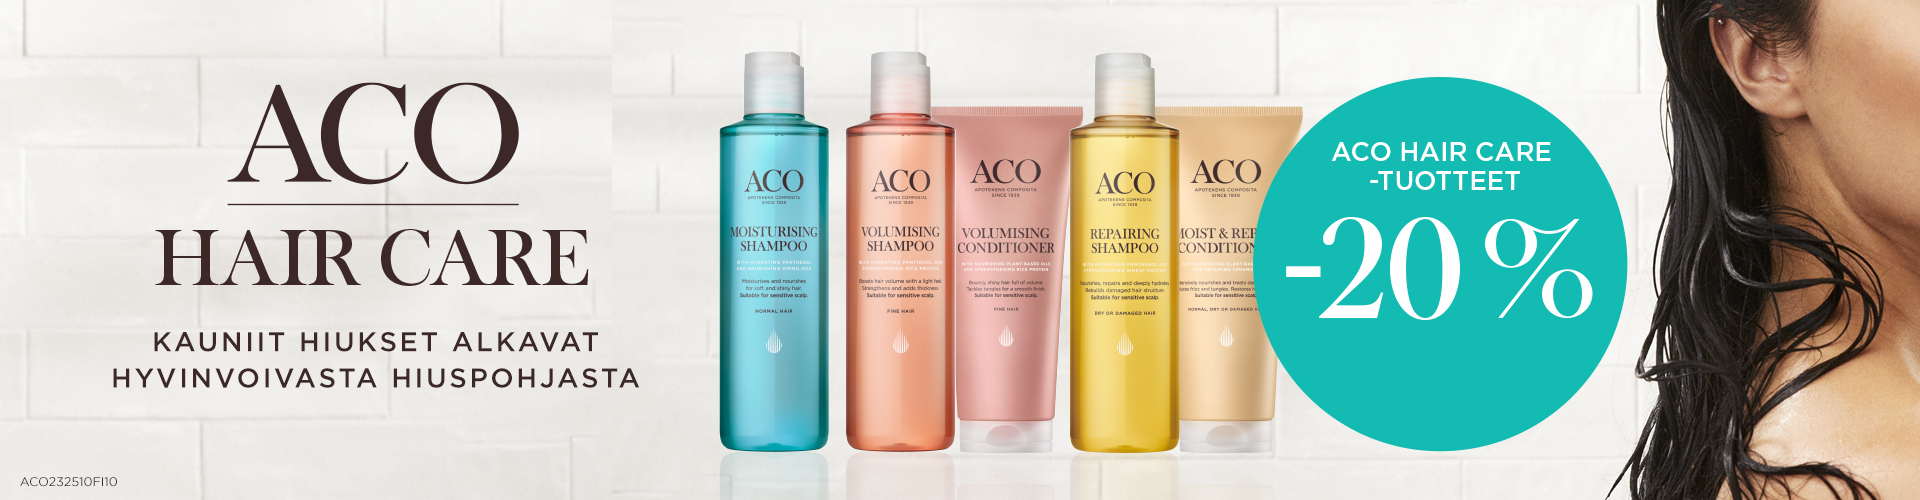 aco hair care shampoo hoitoaine tarjous